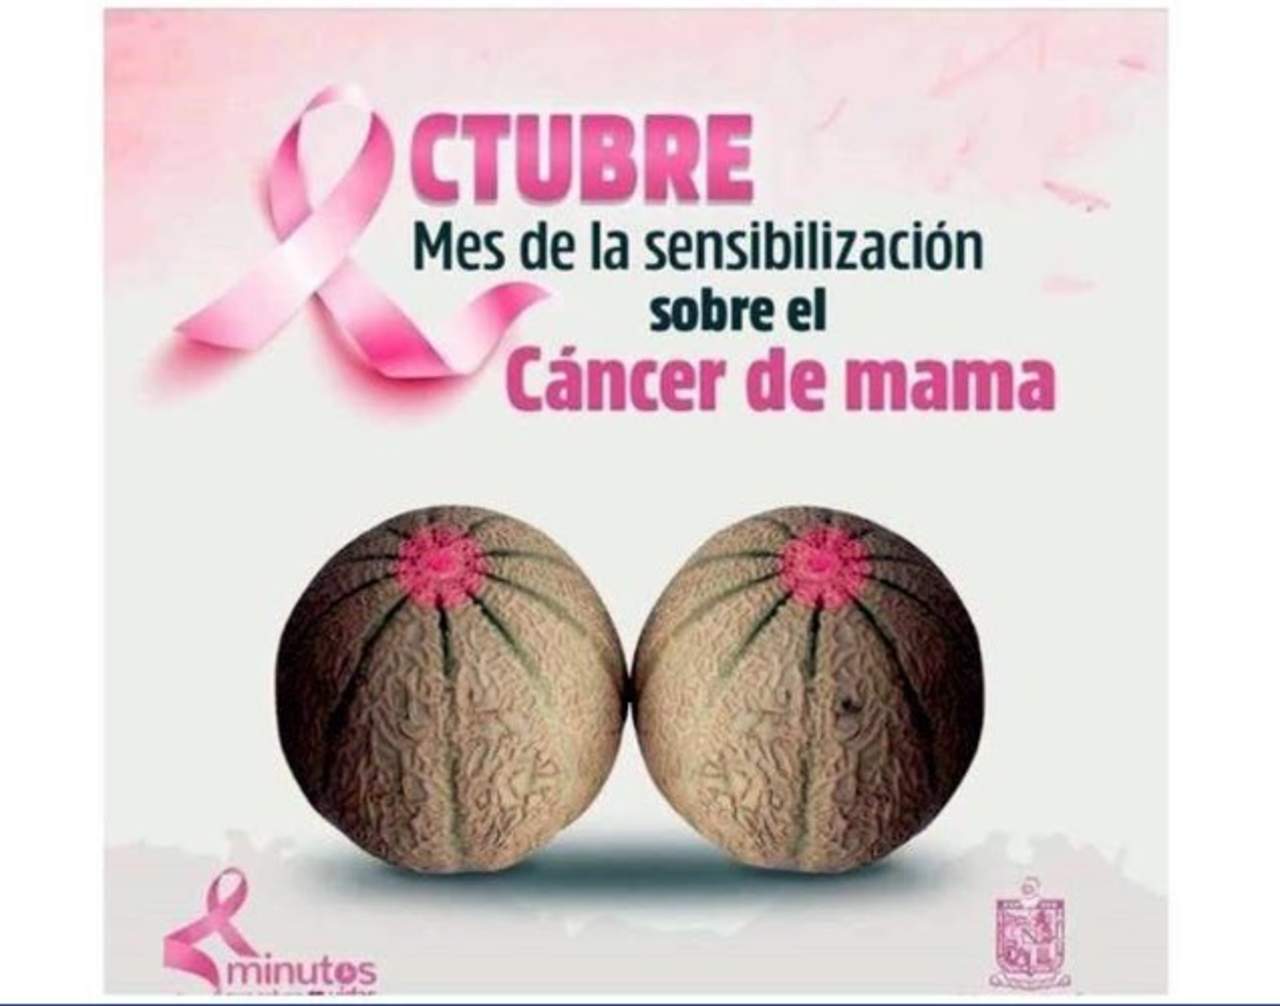 La administración estatal lanzó una campaña para 'sensibilizar' a las mujeres sobre la necesidad de prevención del cáncer de mama con la imagen de dos melones. (TWITTER)